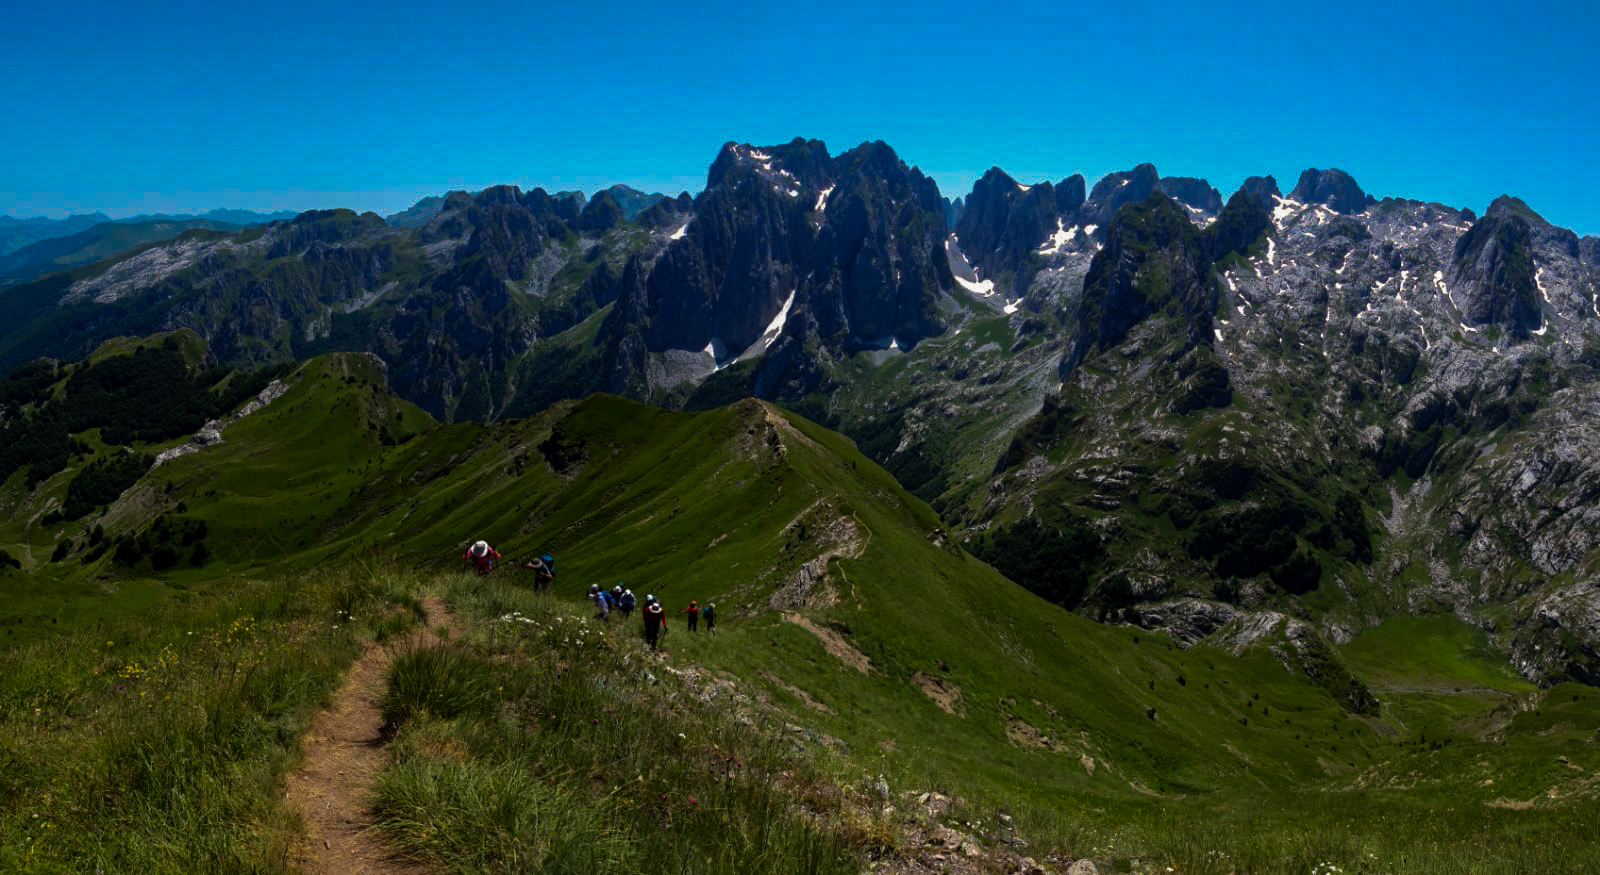 Day 9: Transfer Babino Polje - Grbaja Valley. Hike to Taljanka peak. Transfer back to Vusanje